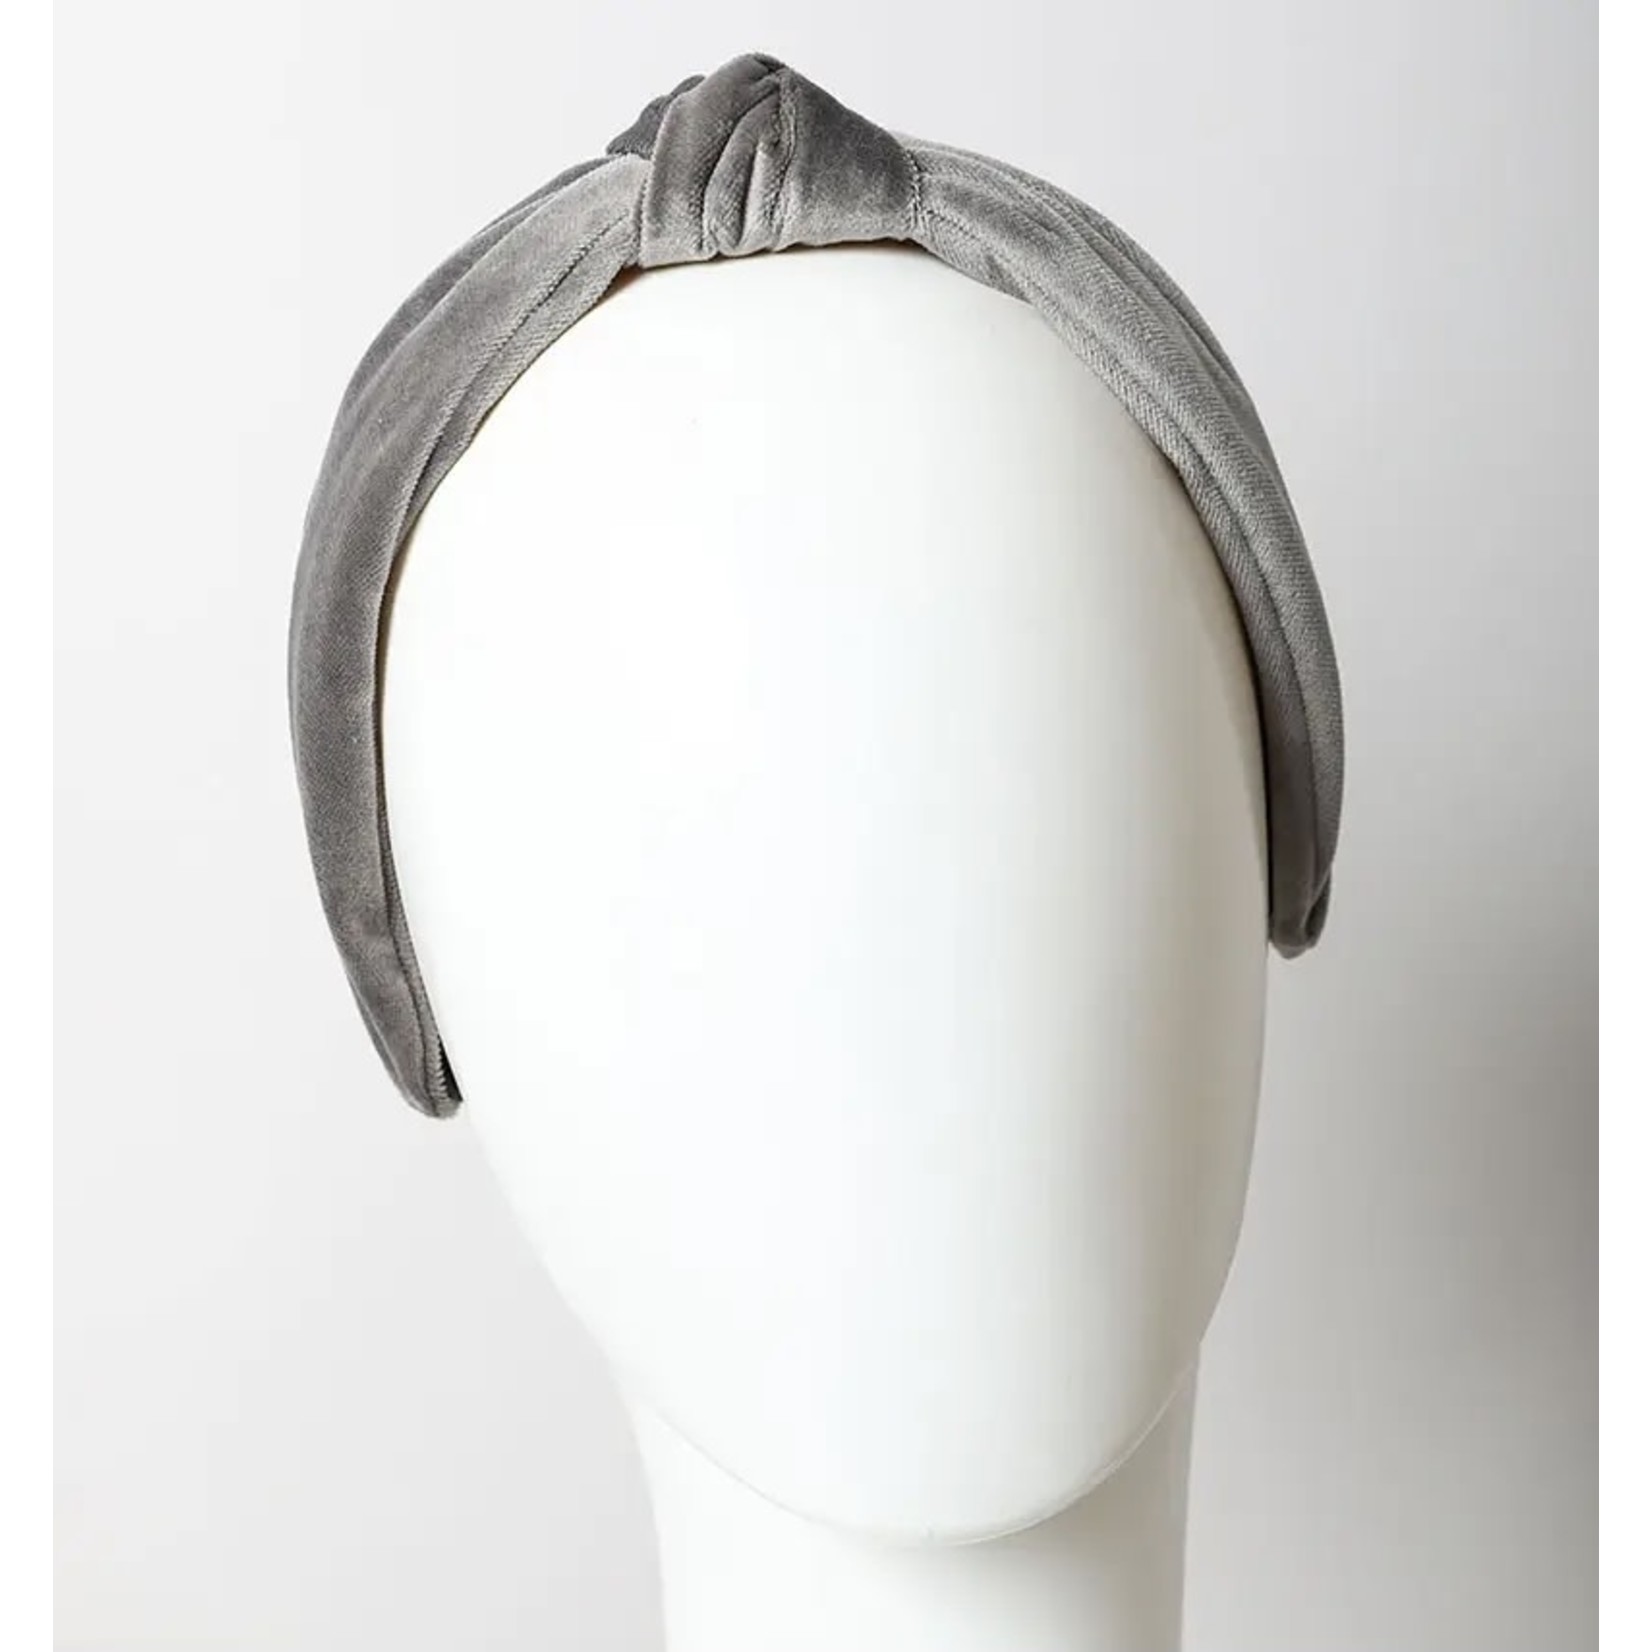 Leto Accessories Headband: